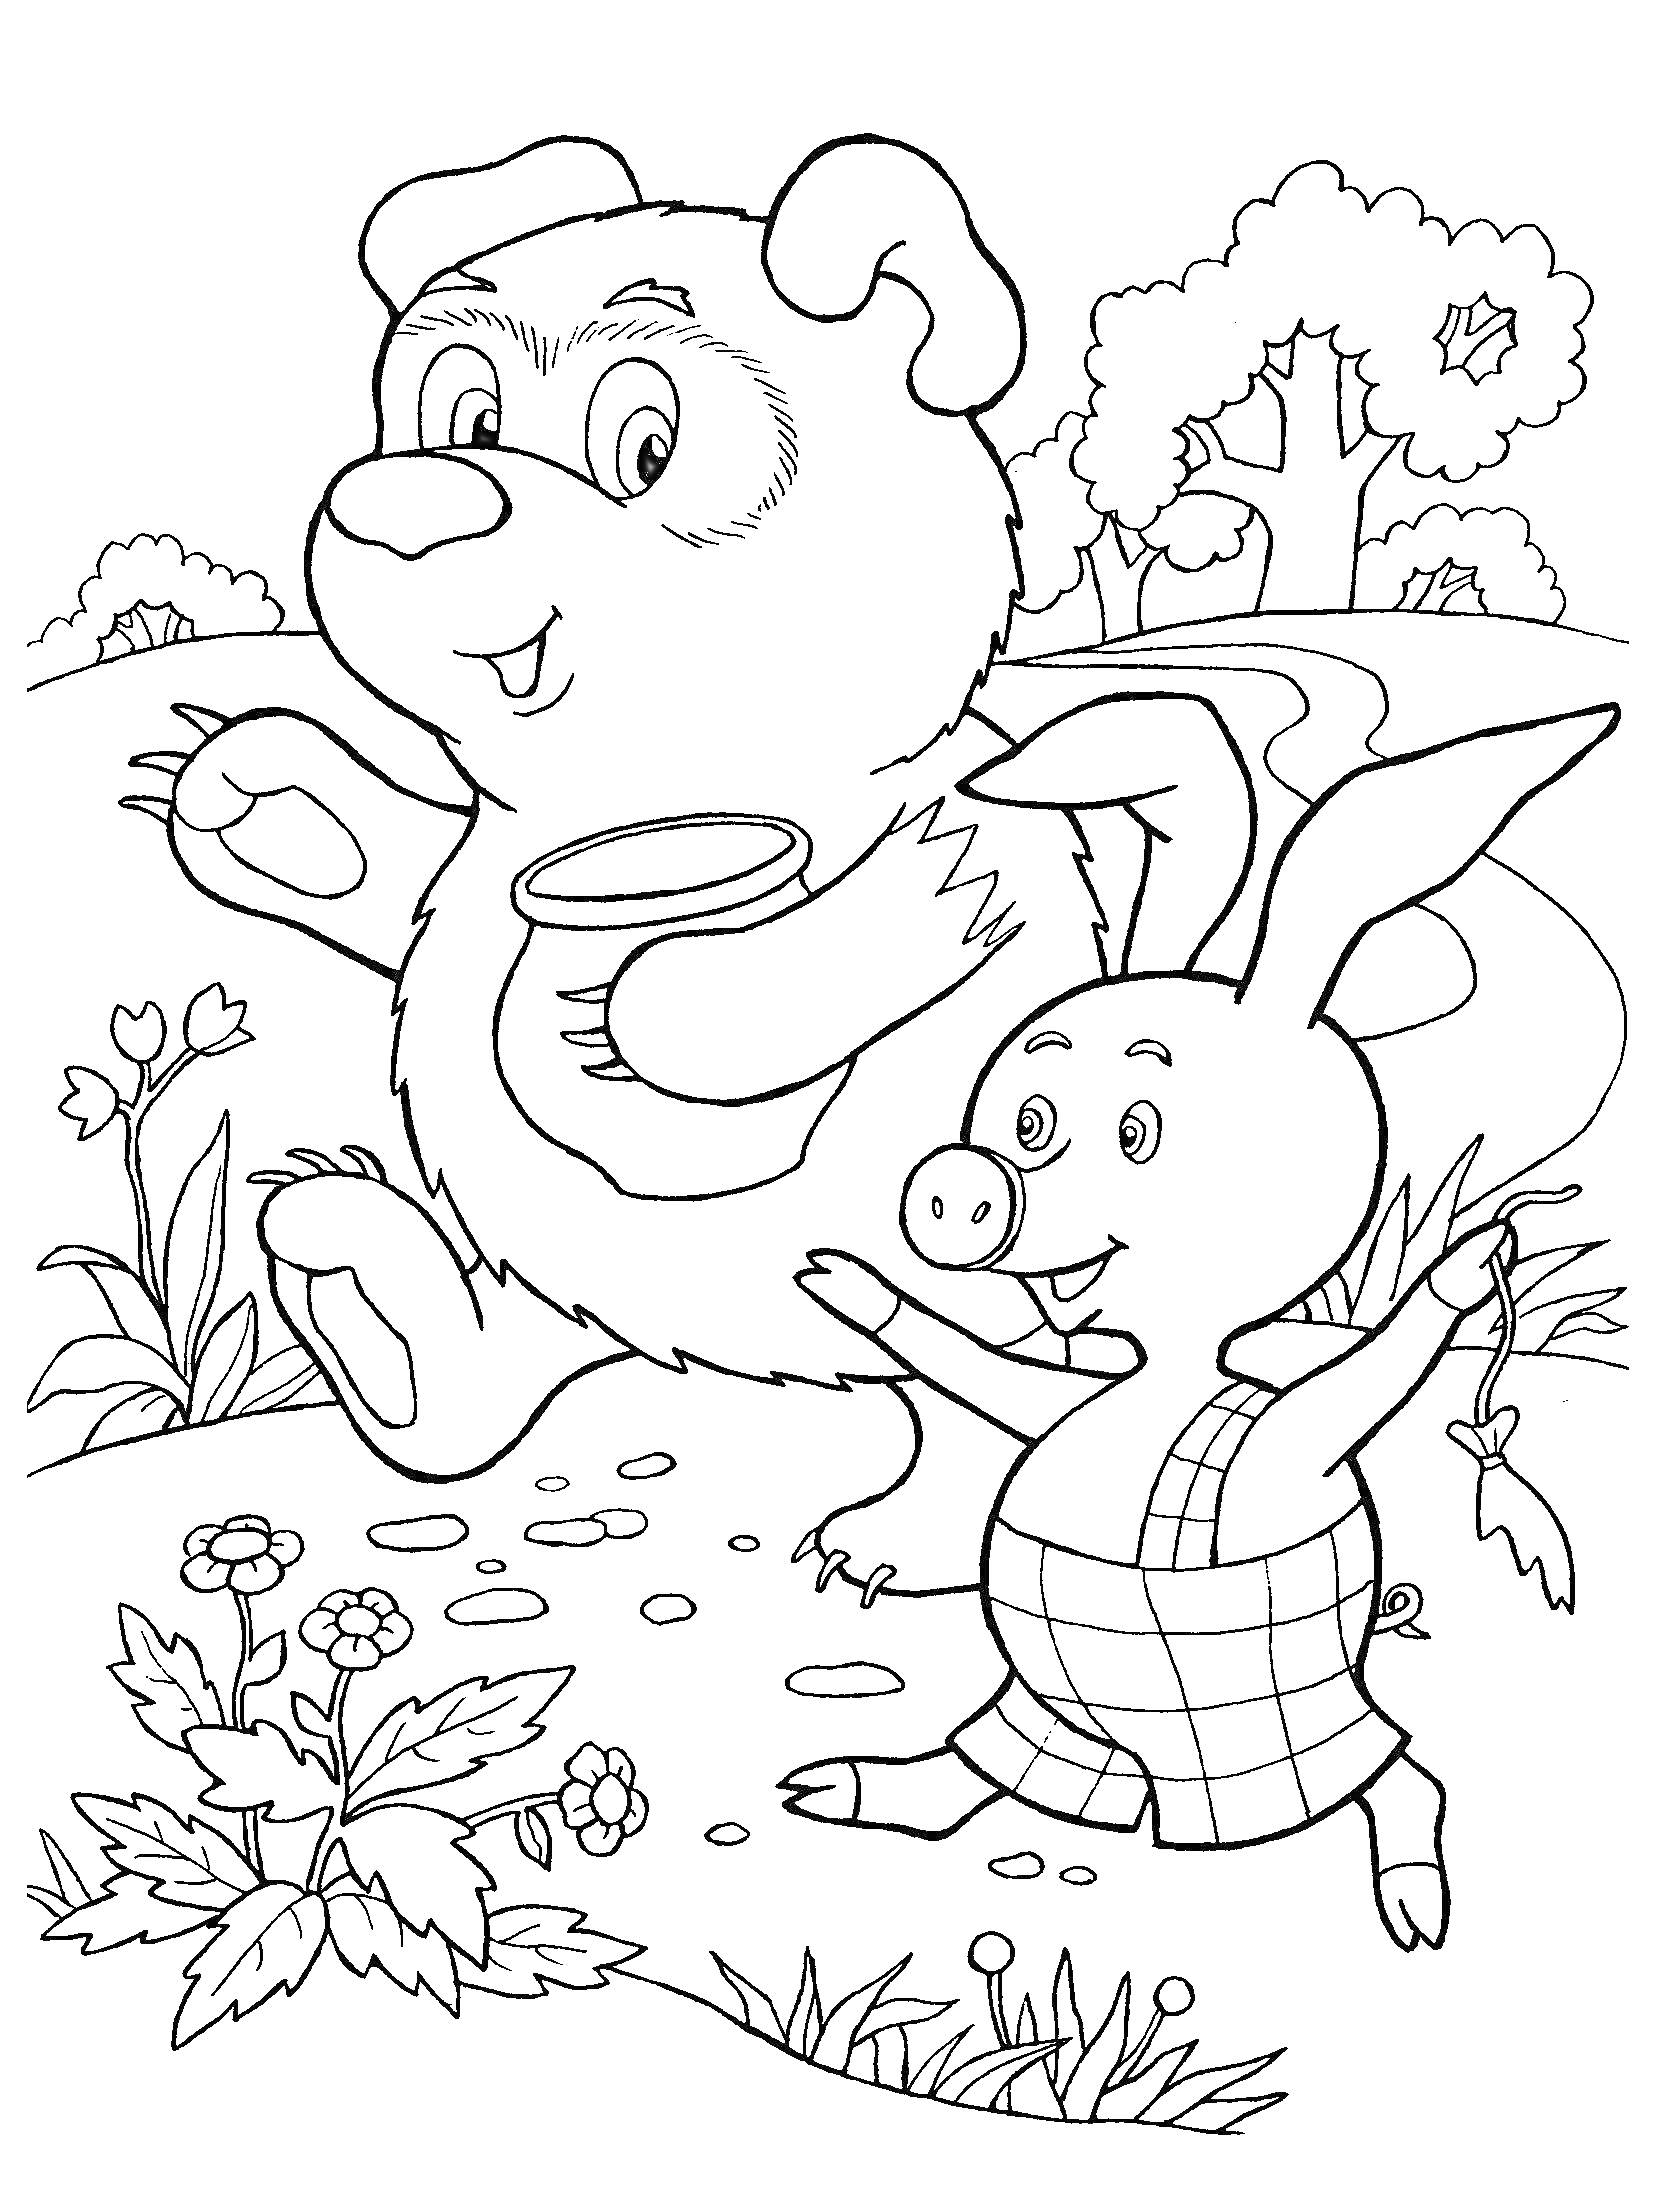 Раскраска Винни Пух и Пятачок гуляют по лесу